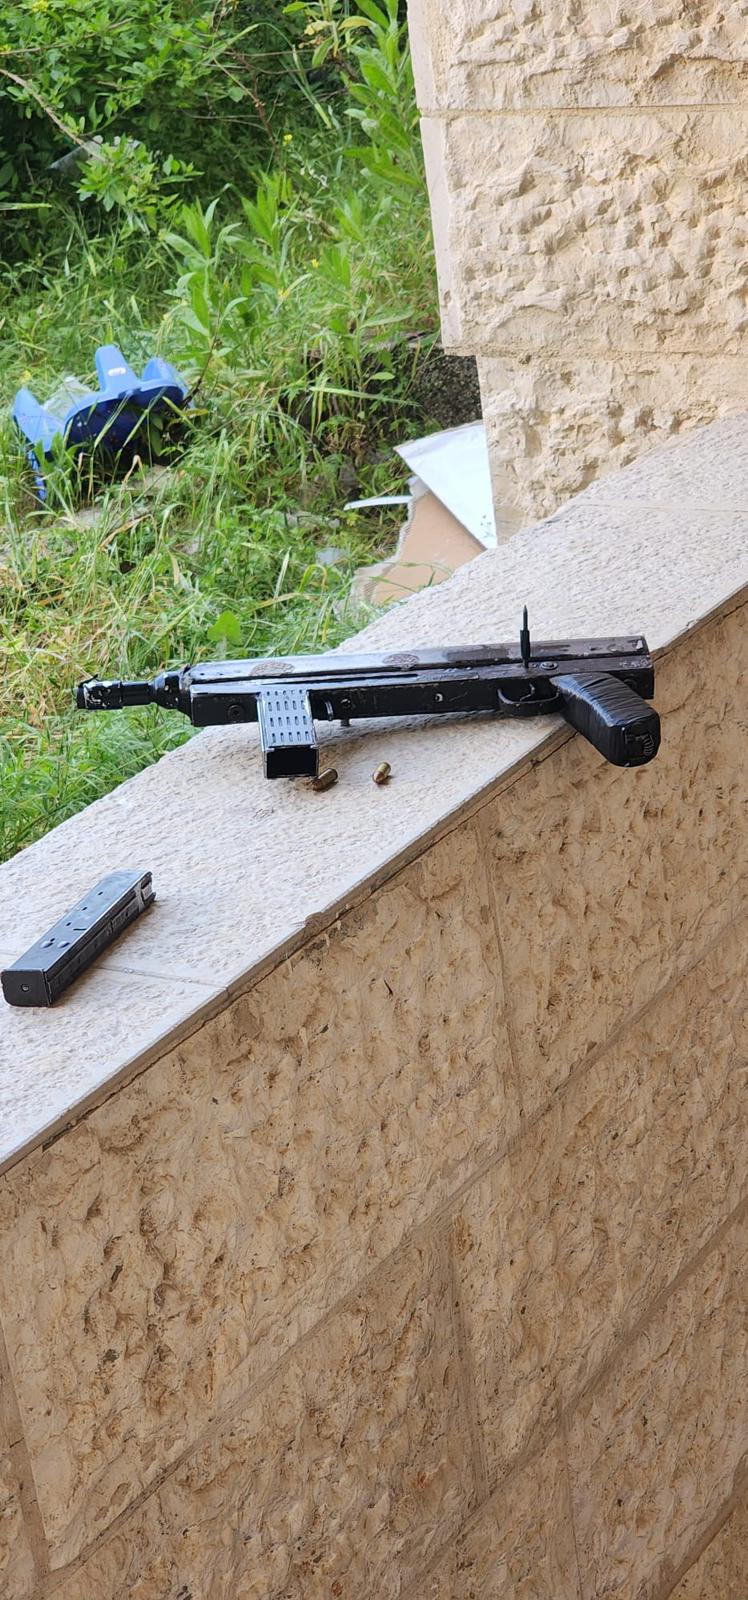 سلاح كارلو محلي الصنع عُثر عليه في مكان قريب من مكان الدهس